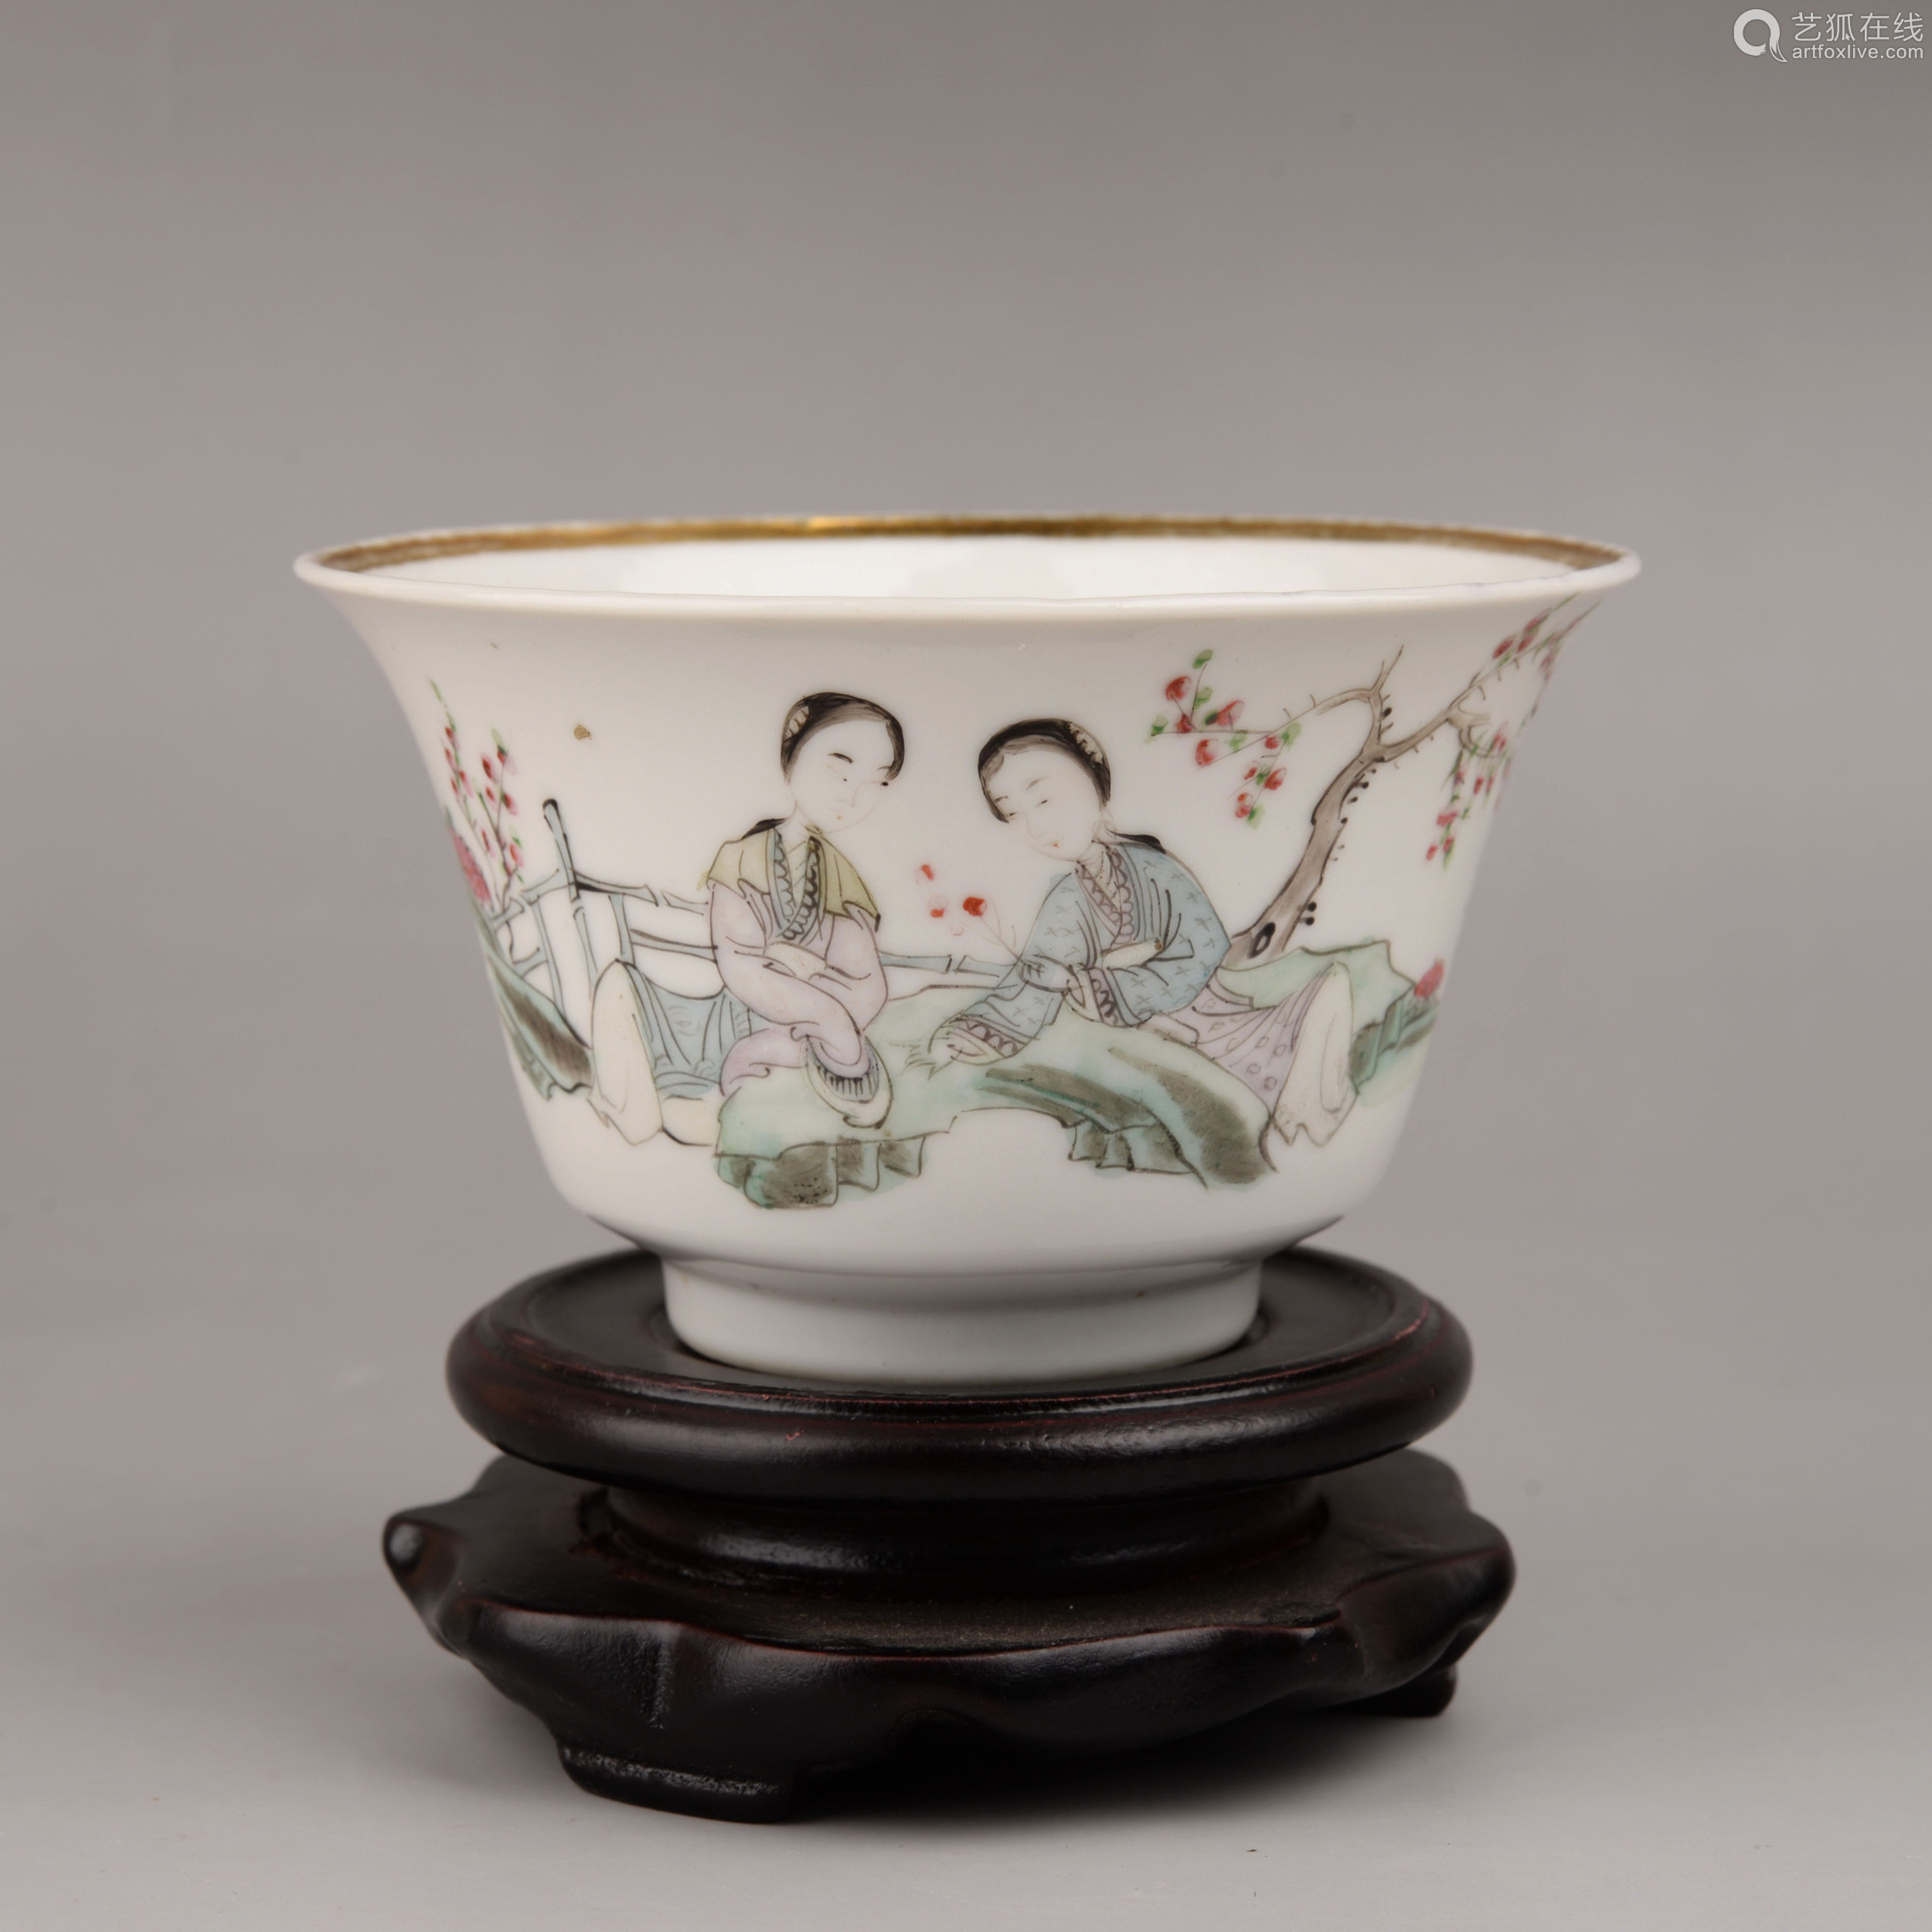 中国清朝時代のお碗2個、美人如玉、官窯製品-